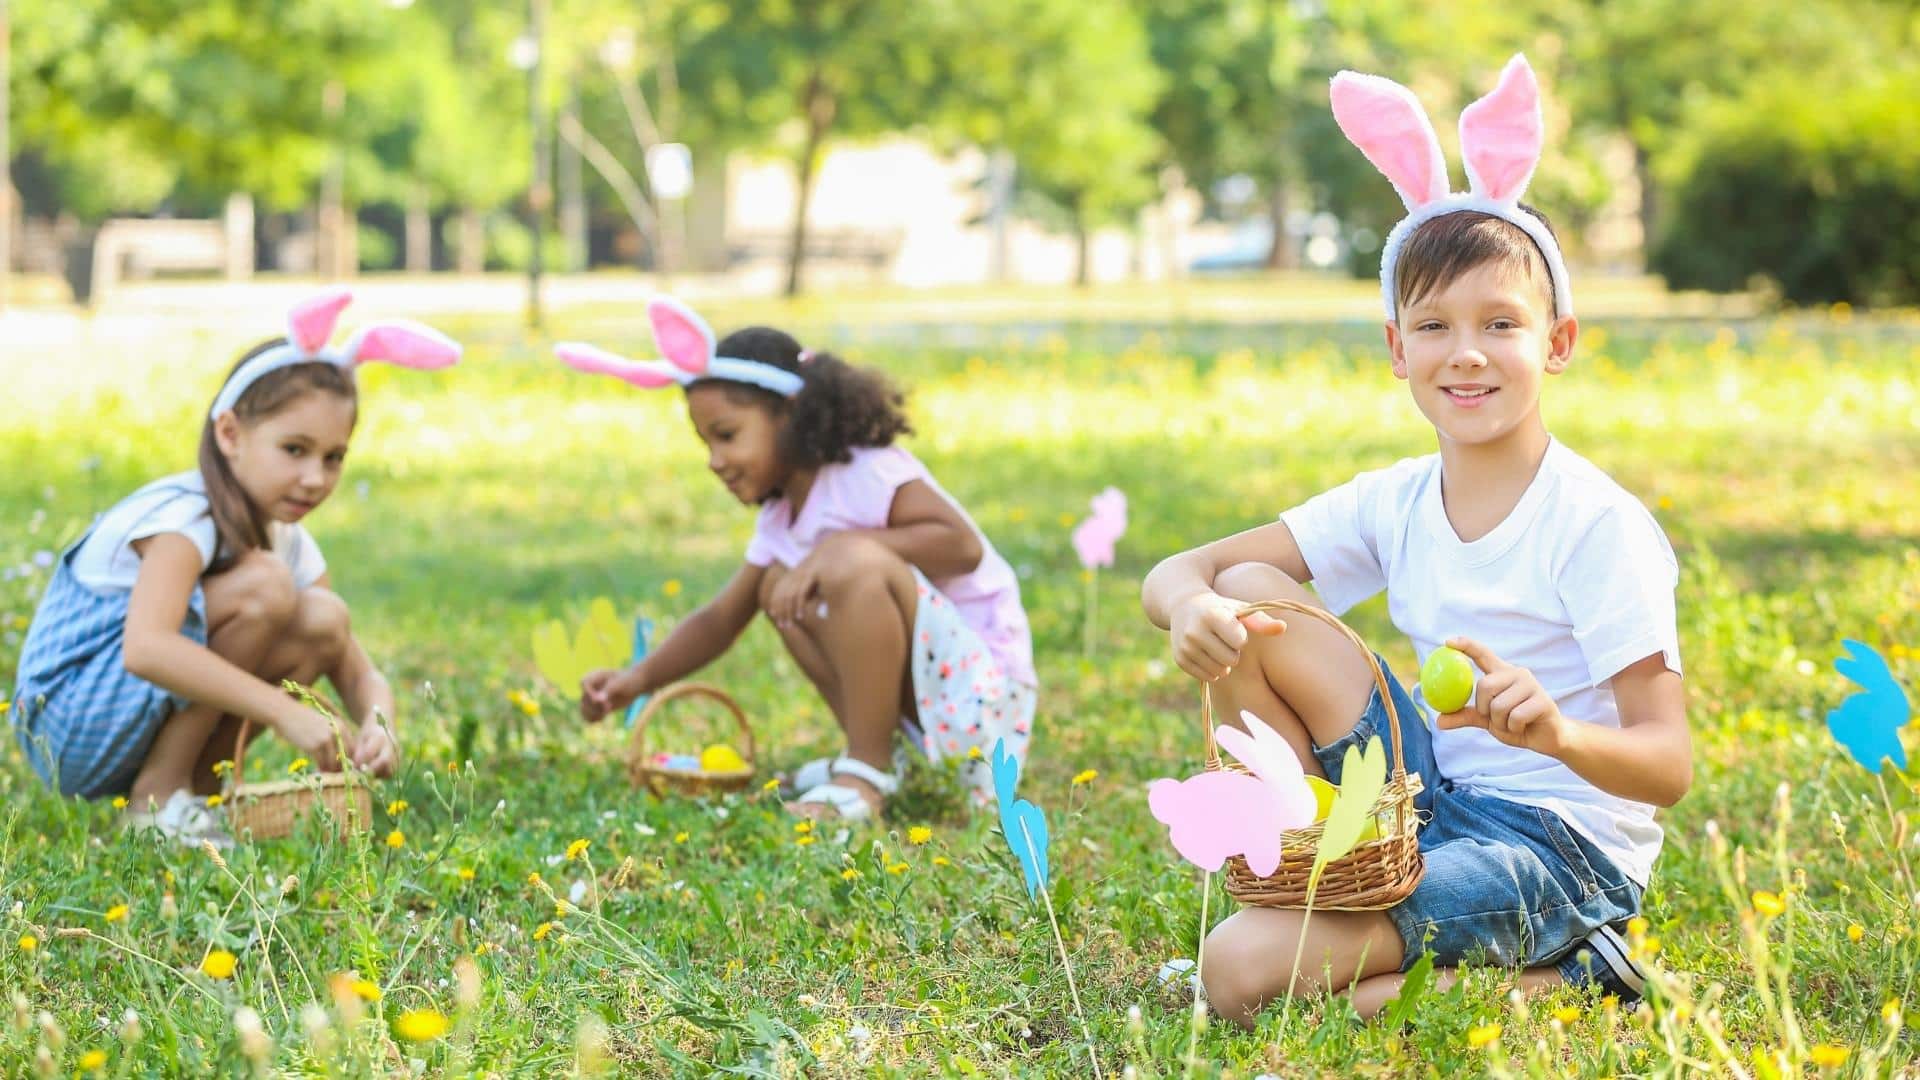 Easter egg hunt at the park